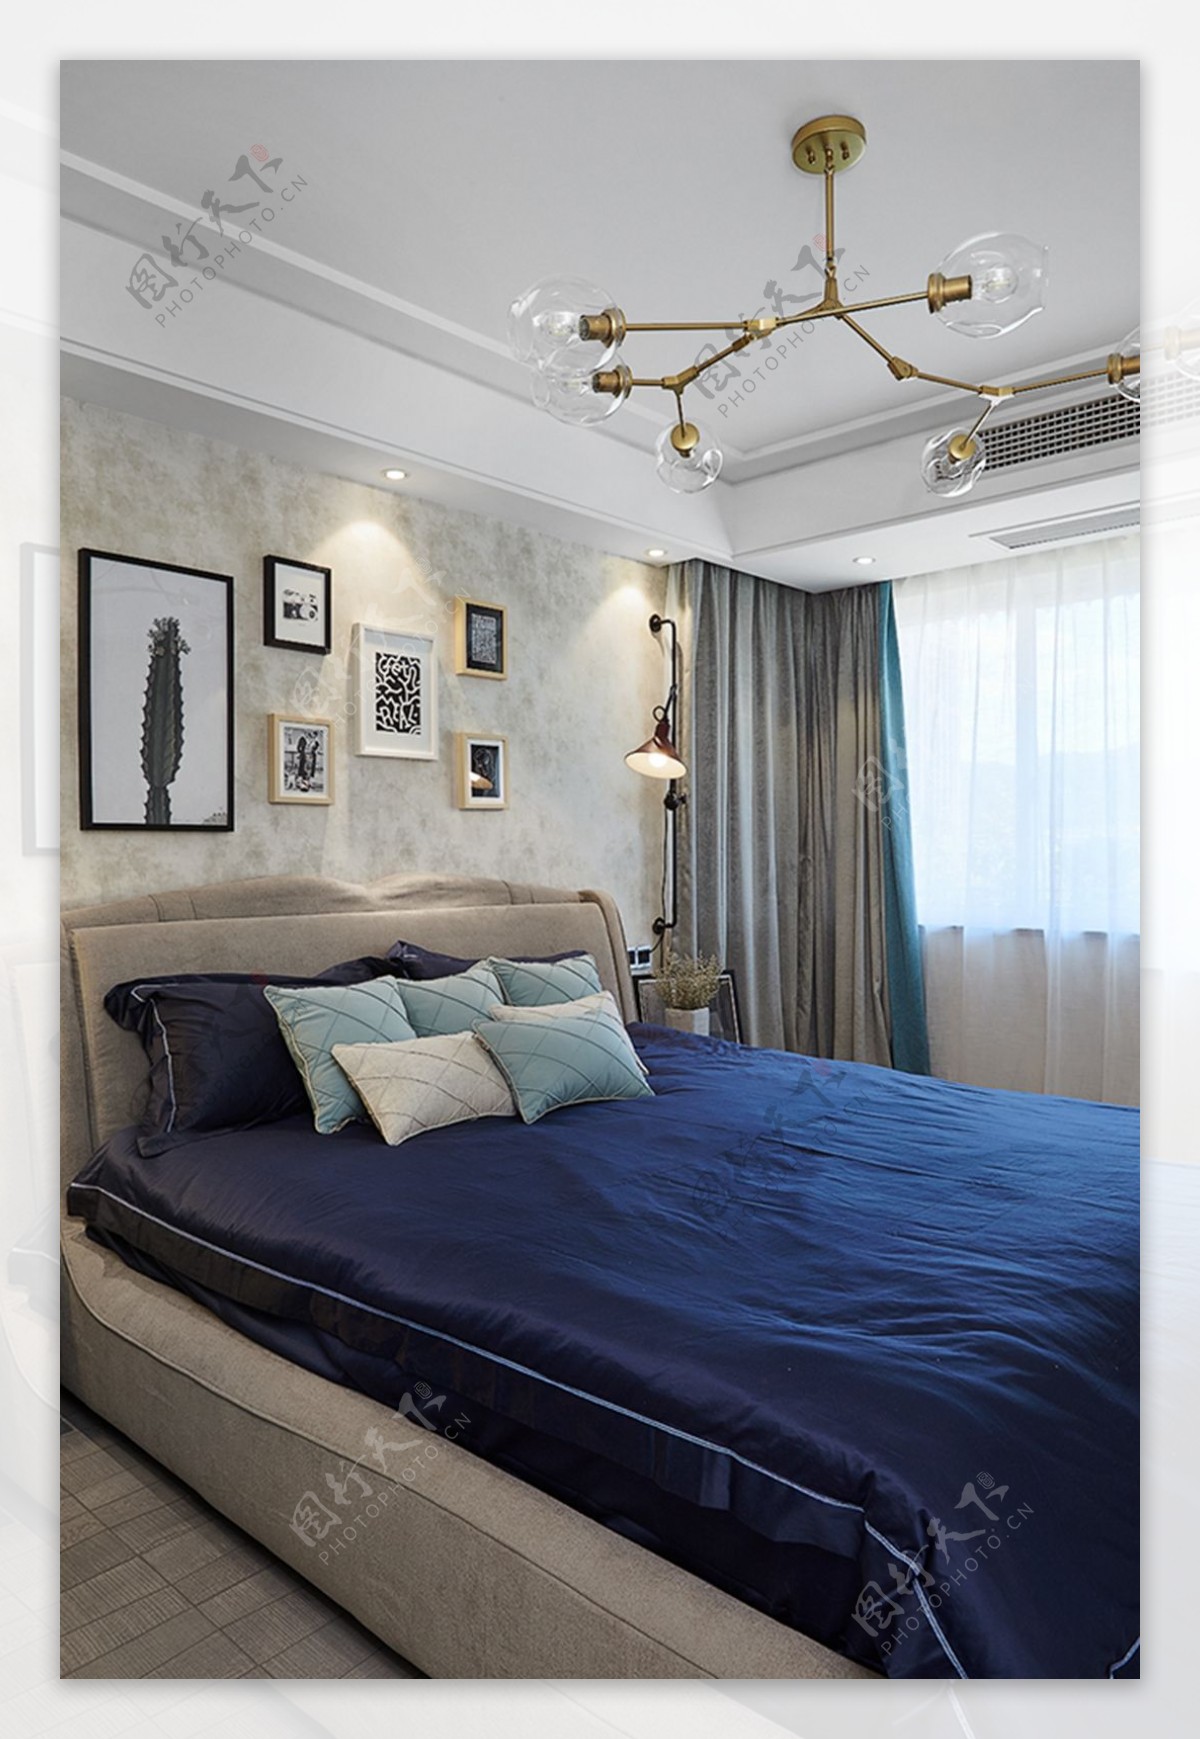 现代欧式卧室装修效果图